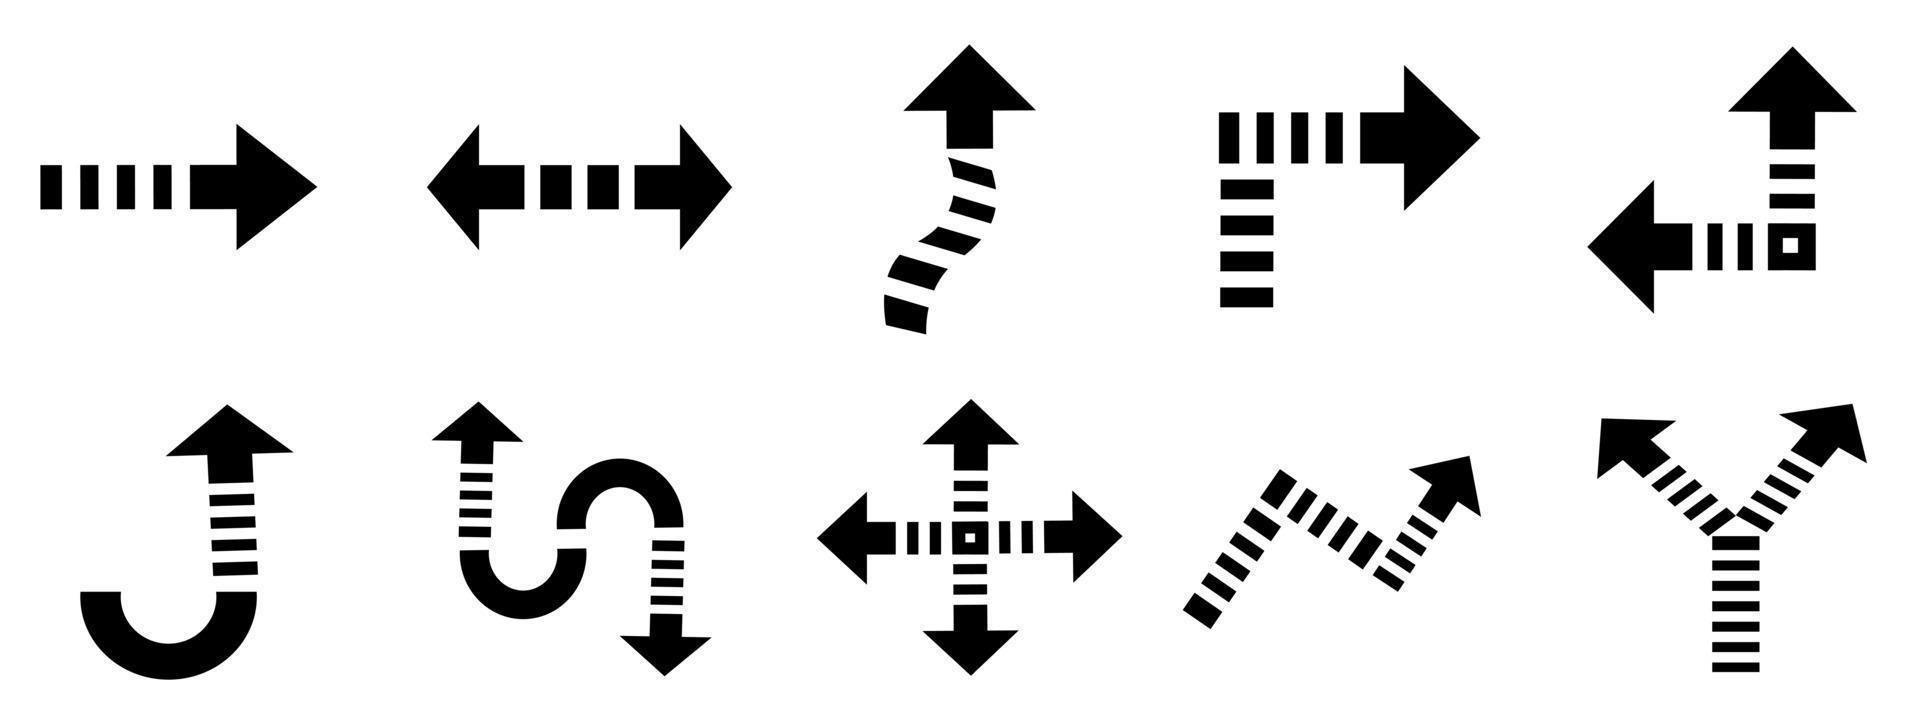 gruppo di frecce elemento icona per illustrazione vettoriale decorativo